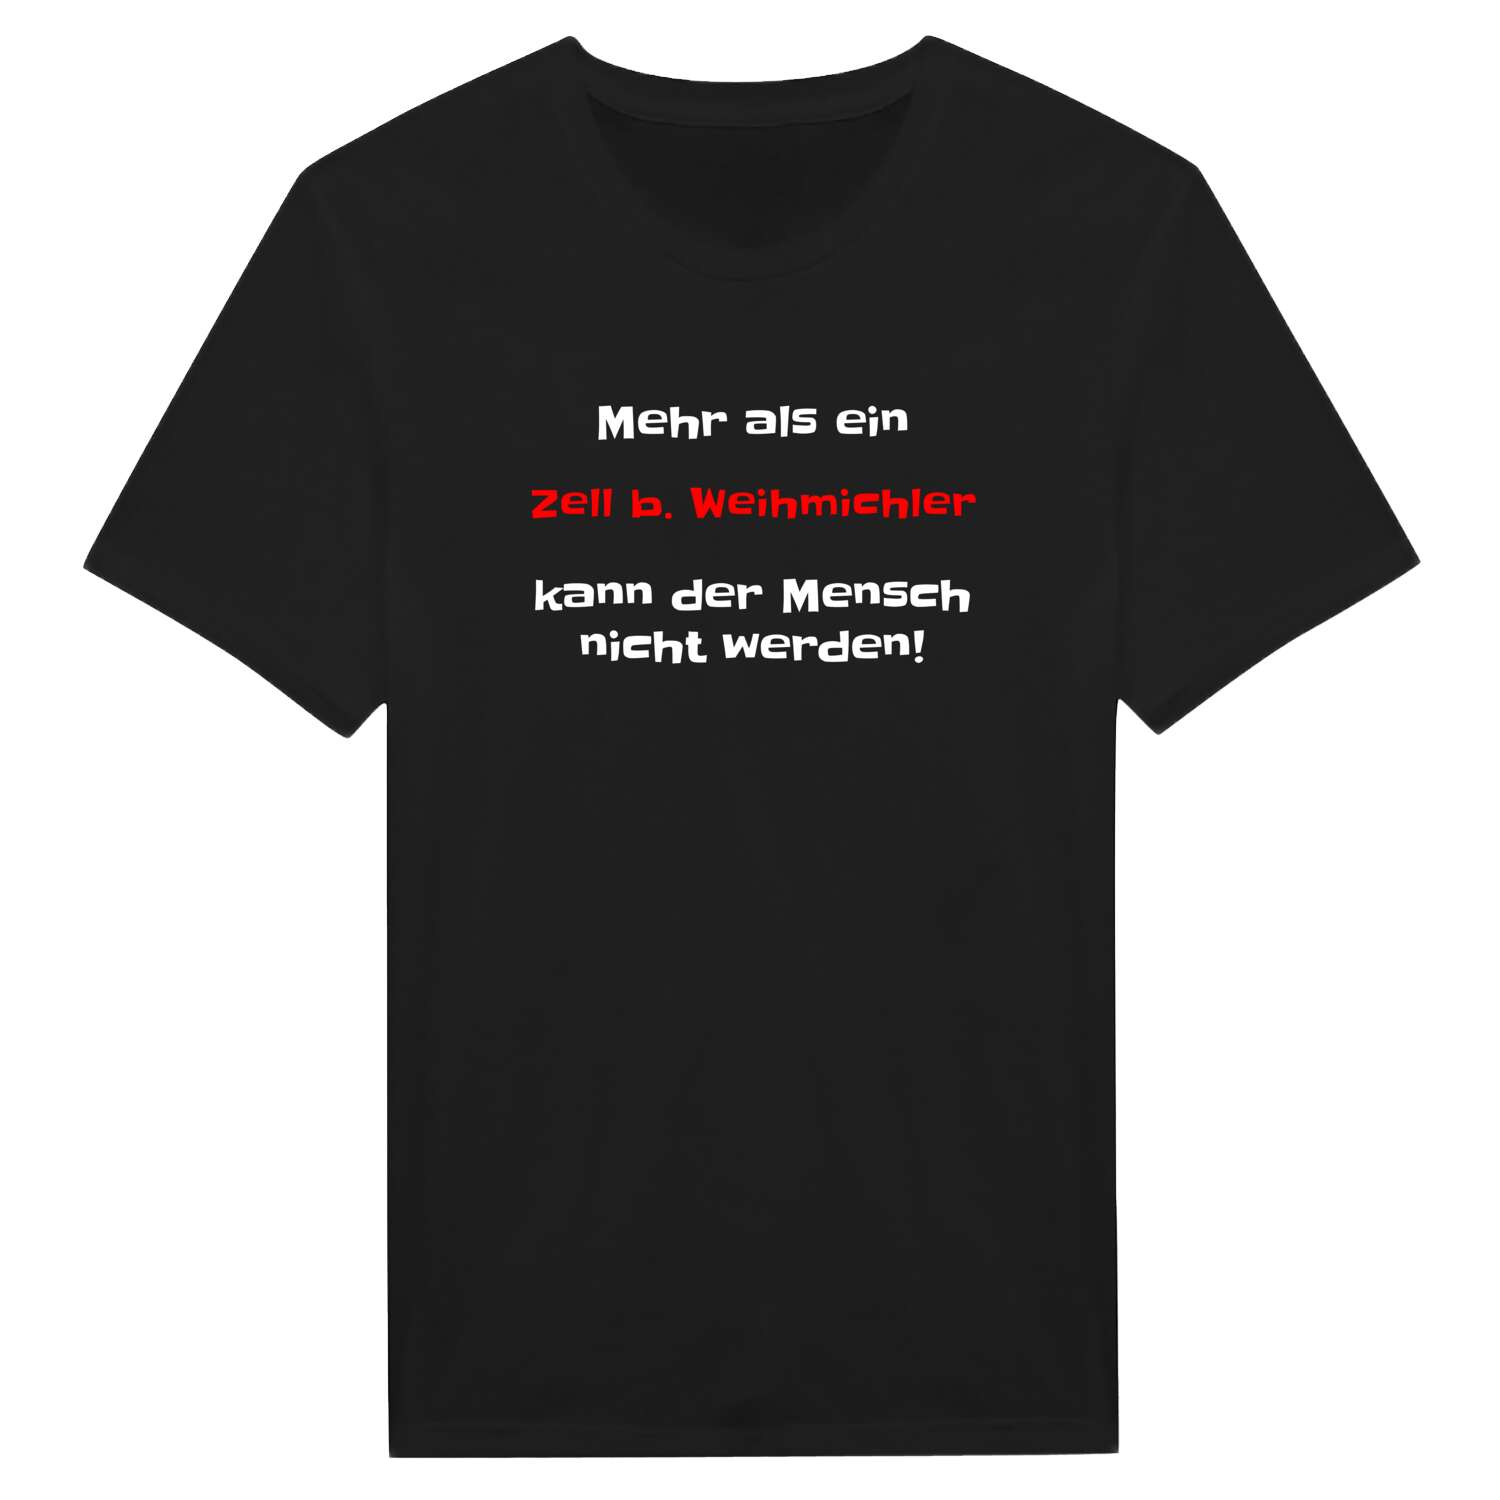 Zell b. Weihmichl T-Shirt »Mehr als ein«